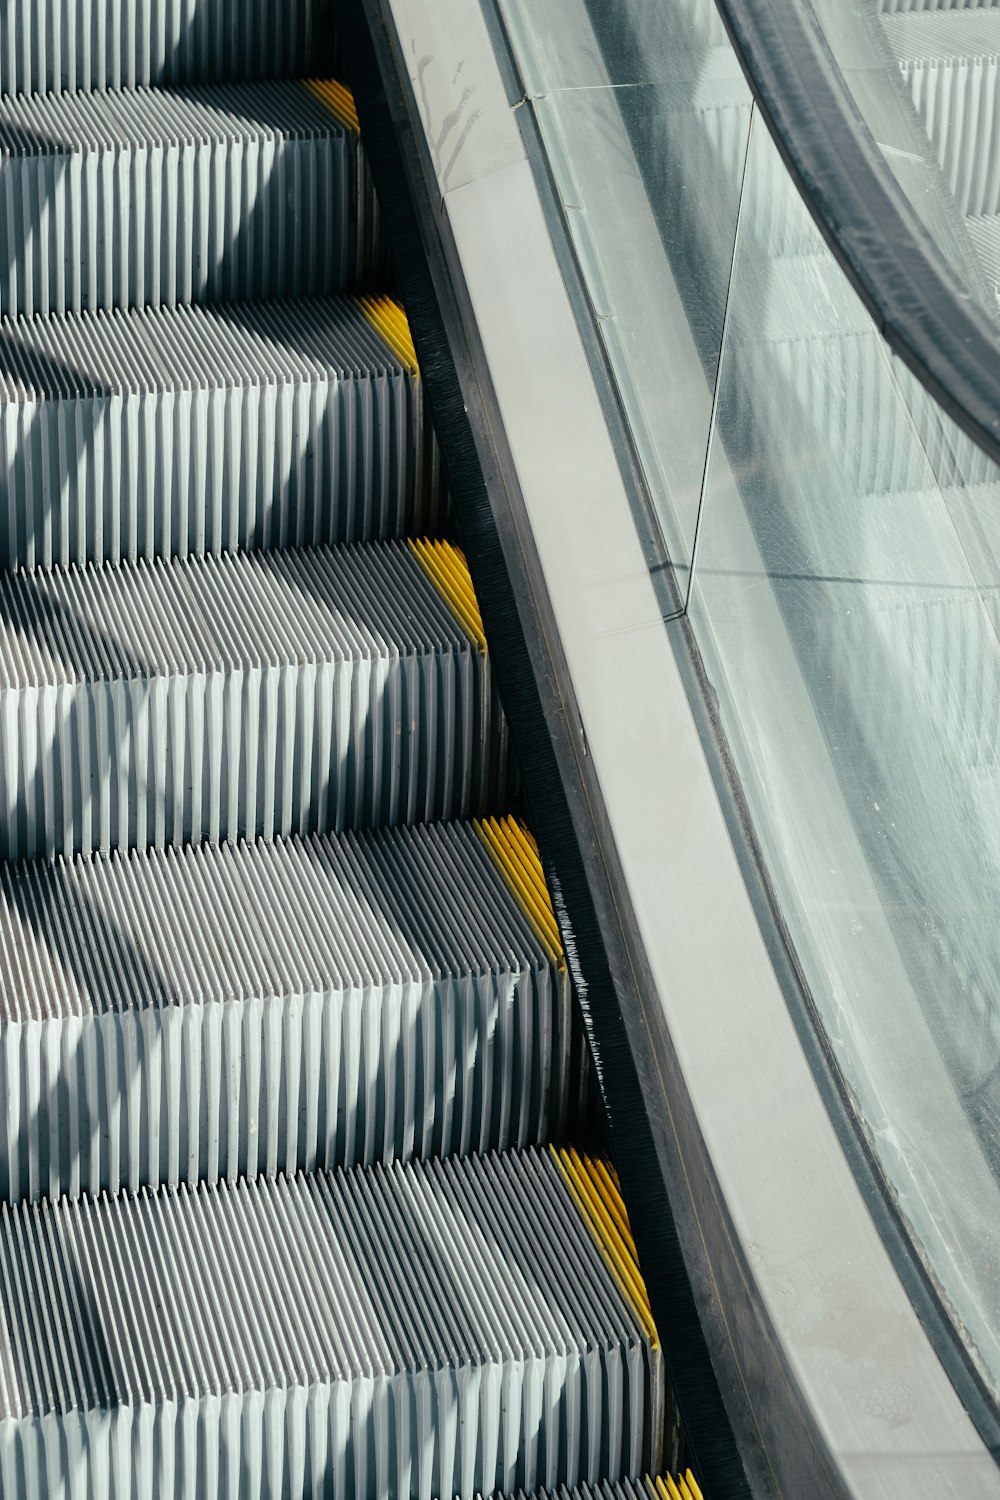 silver and black escalator